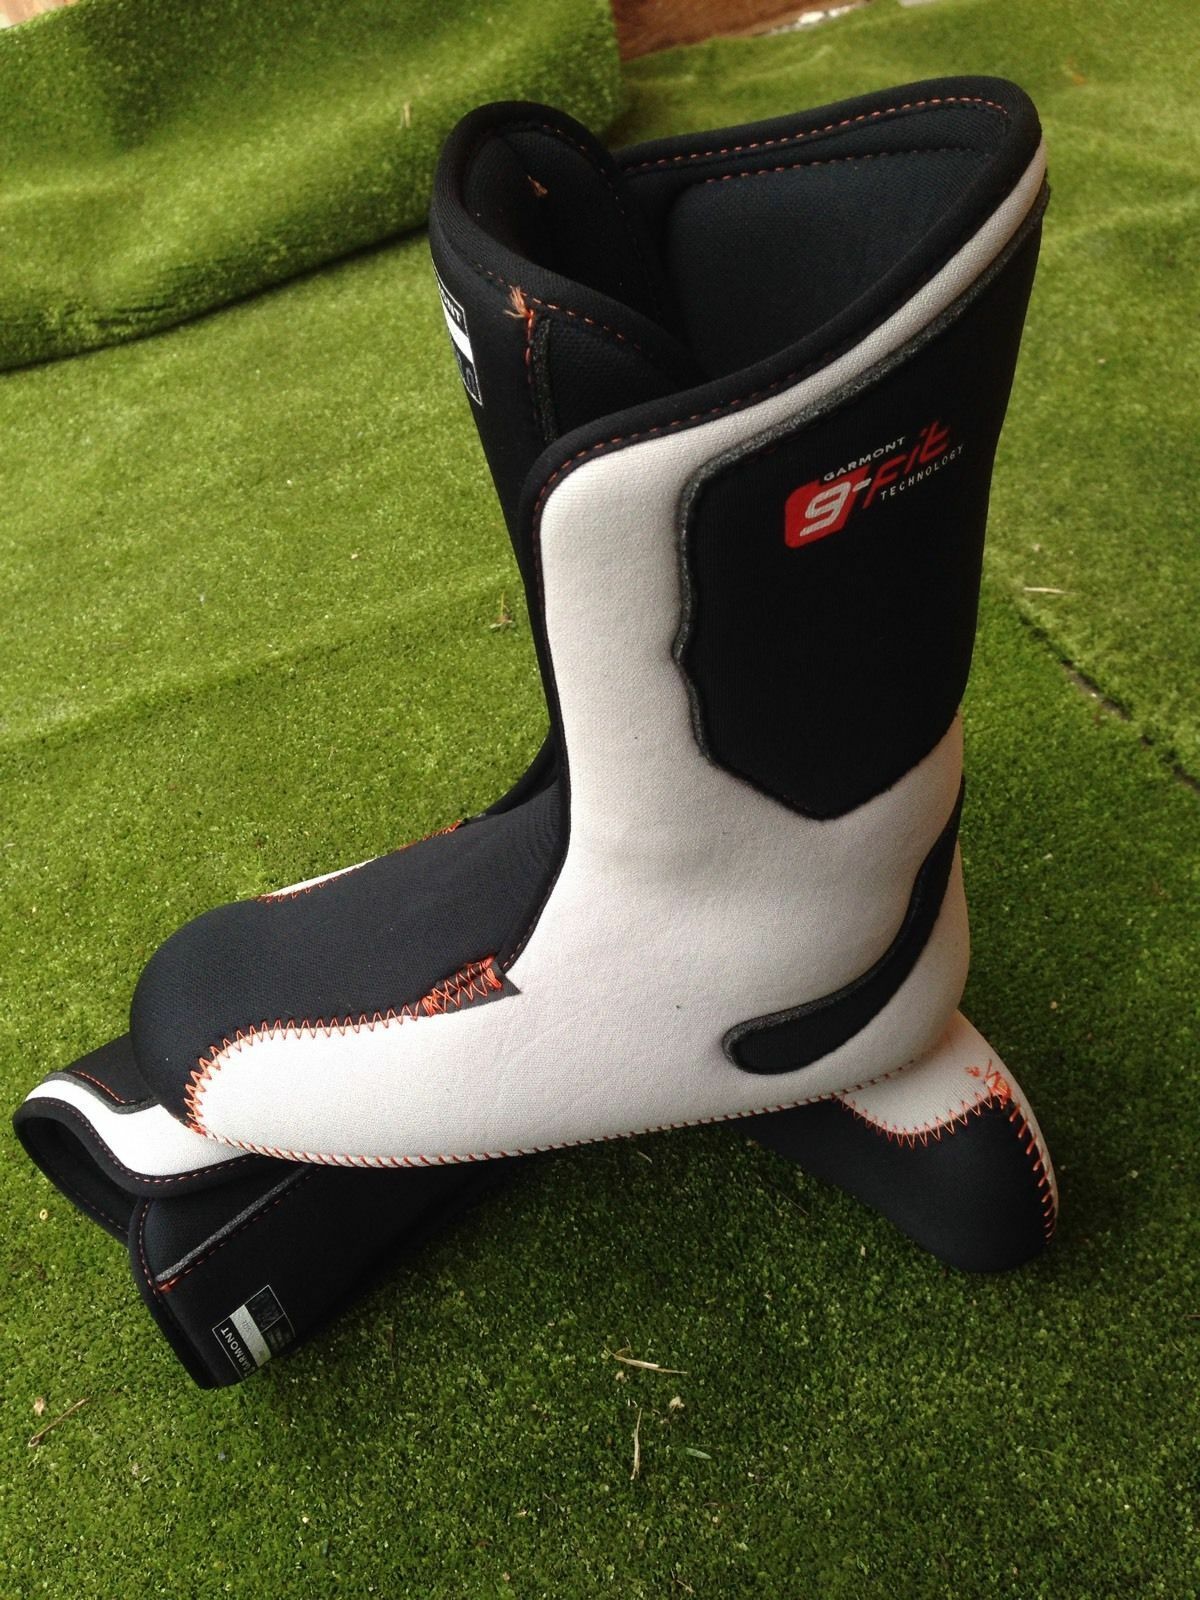 Scarpette interne per scarponi da sci snowboard boots ski liners G-fit thermofit